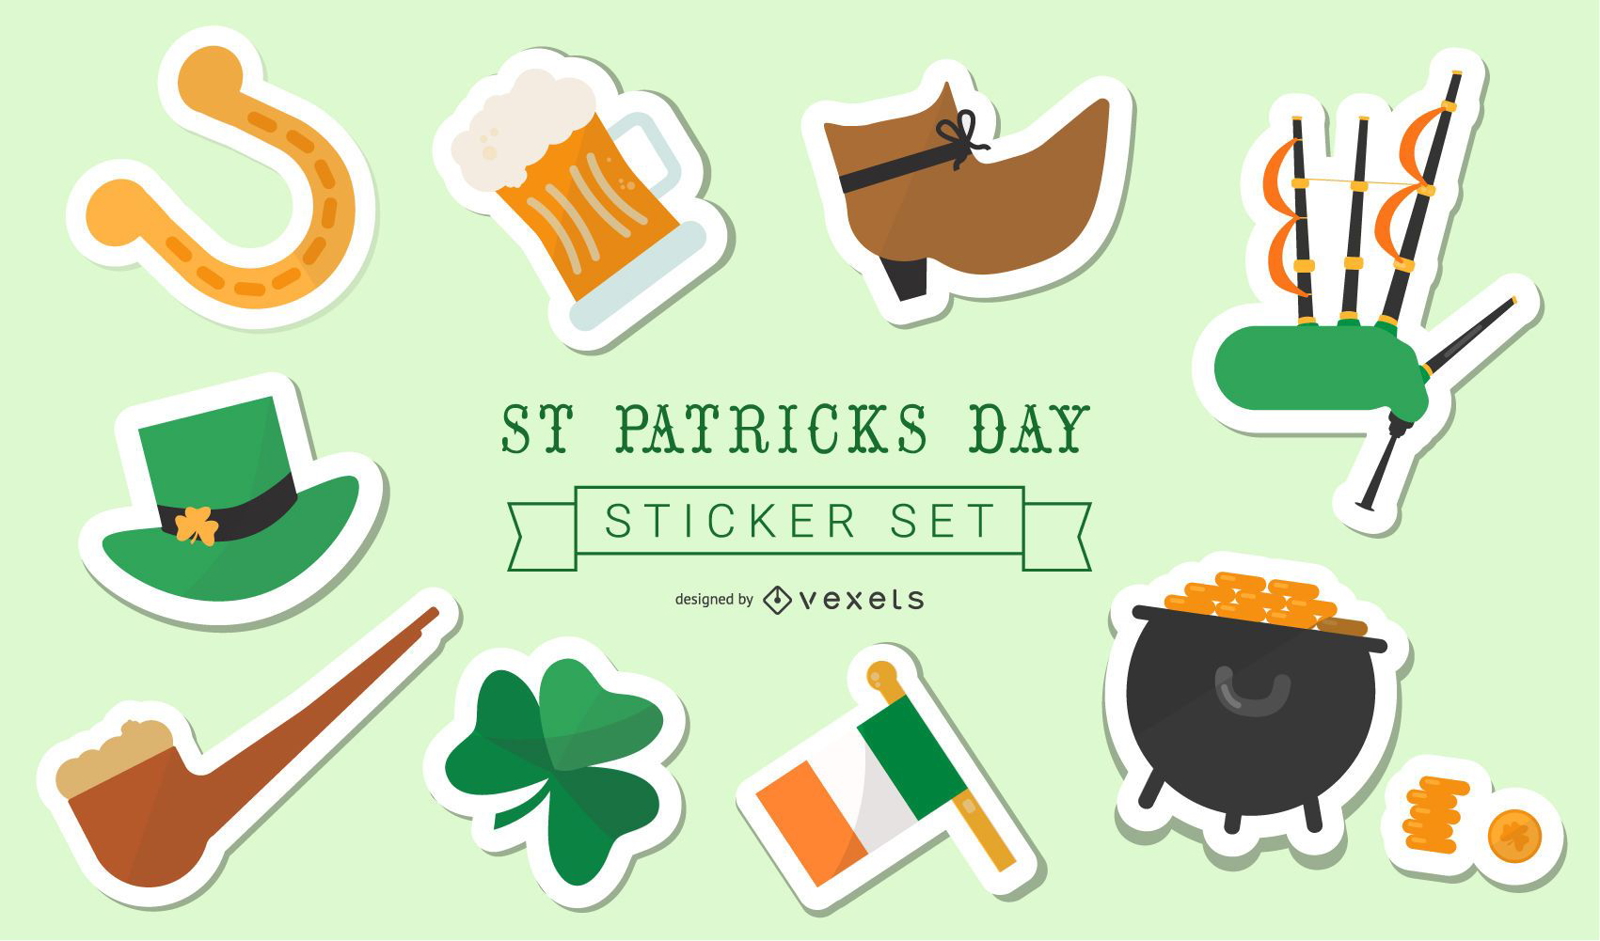 St Patrick's Day Sticker Set